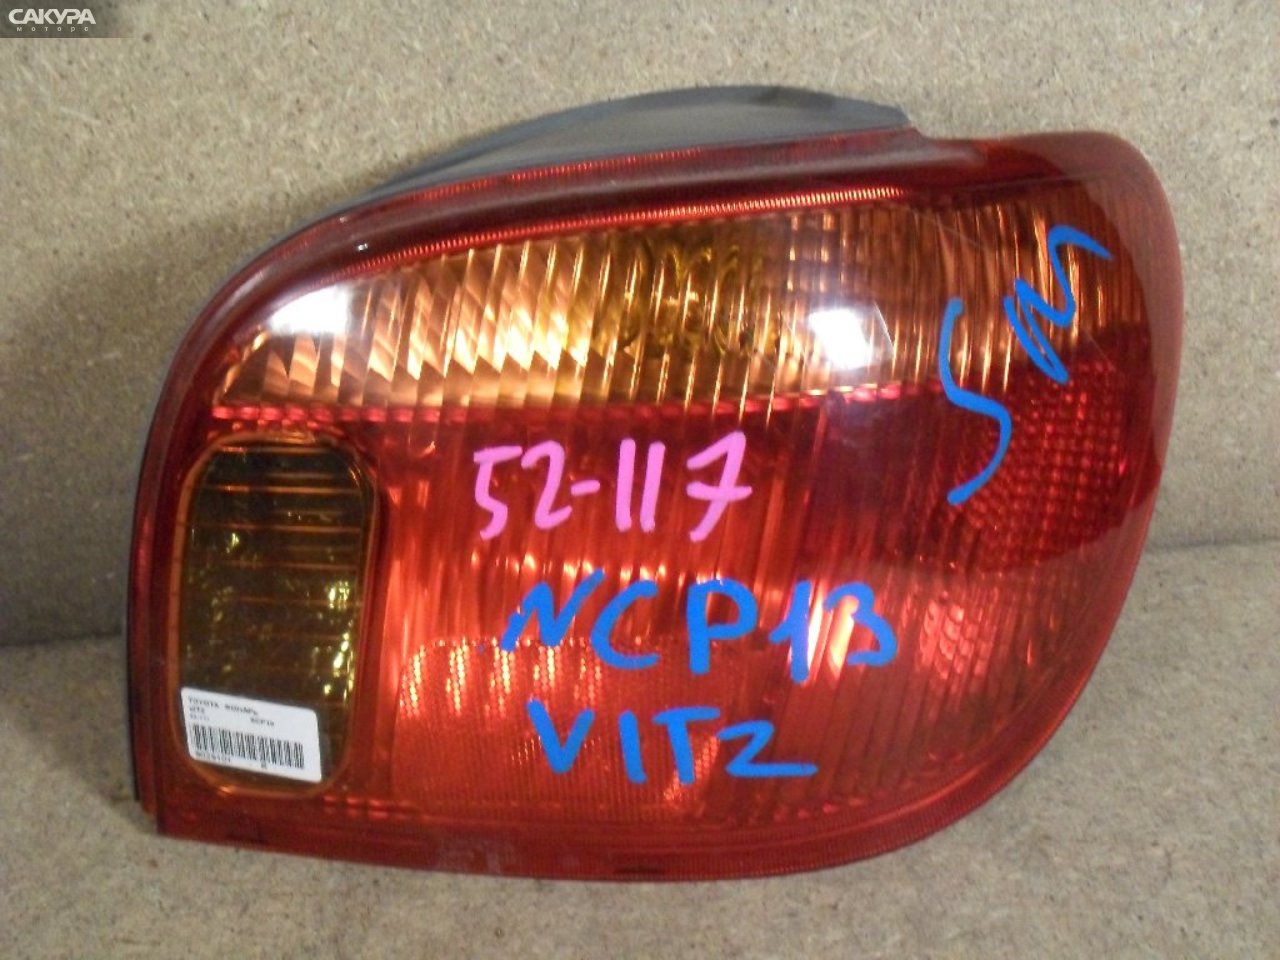 Фонарь стоп-сигнала правый Toyota Vitz SCP10 52-117: купить в Сакура Абакан.